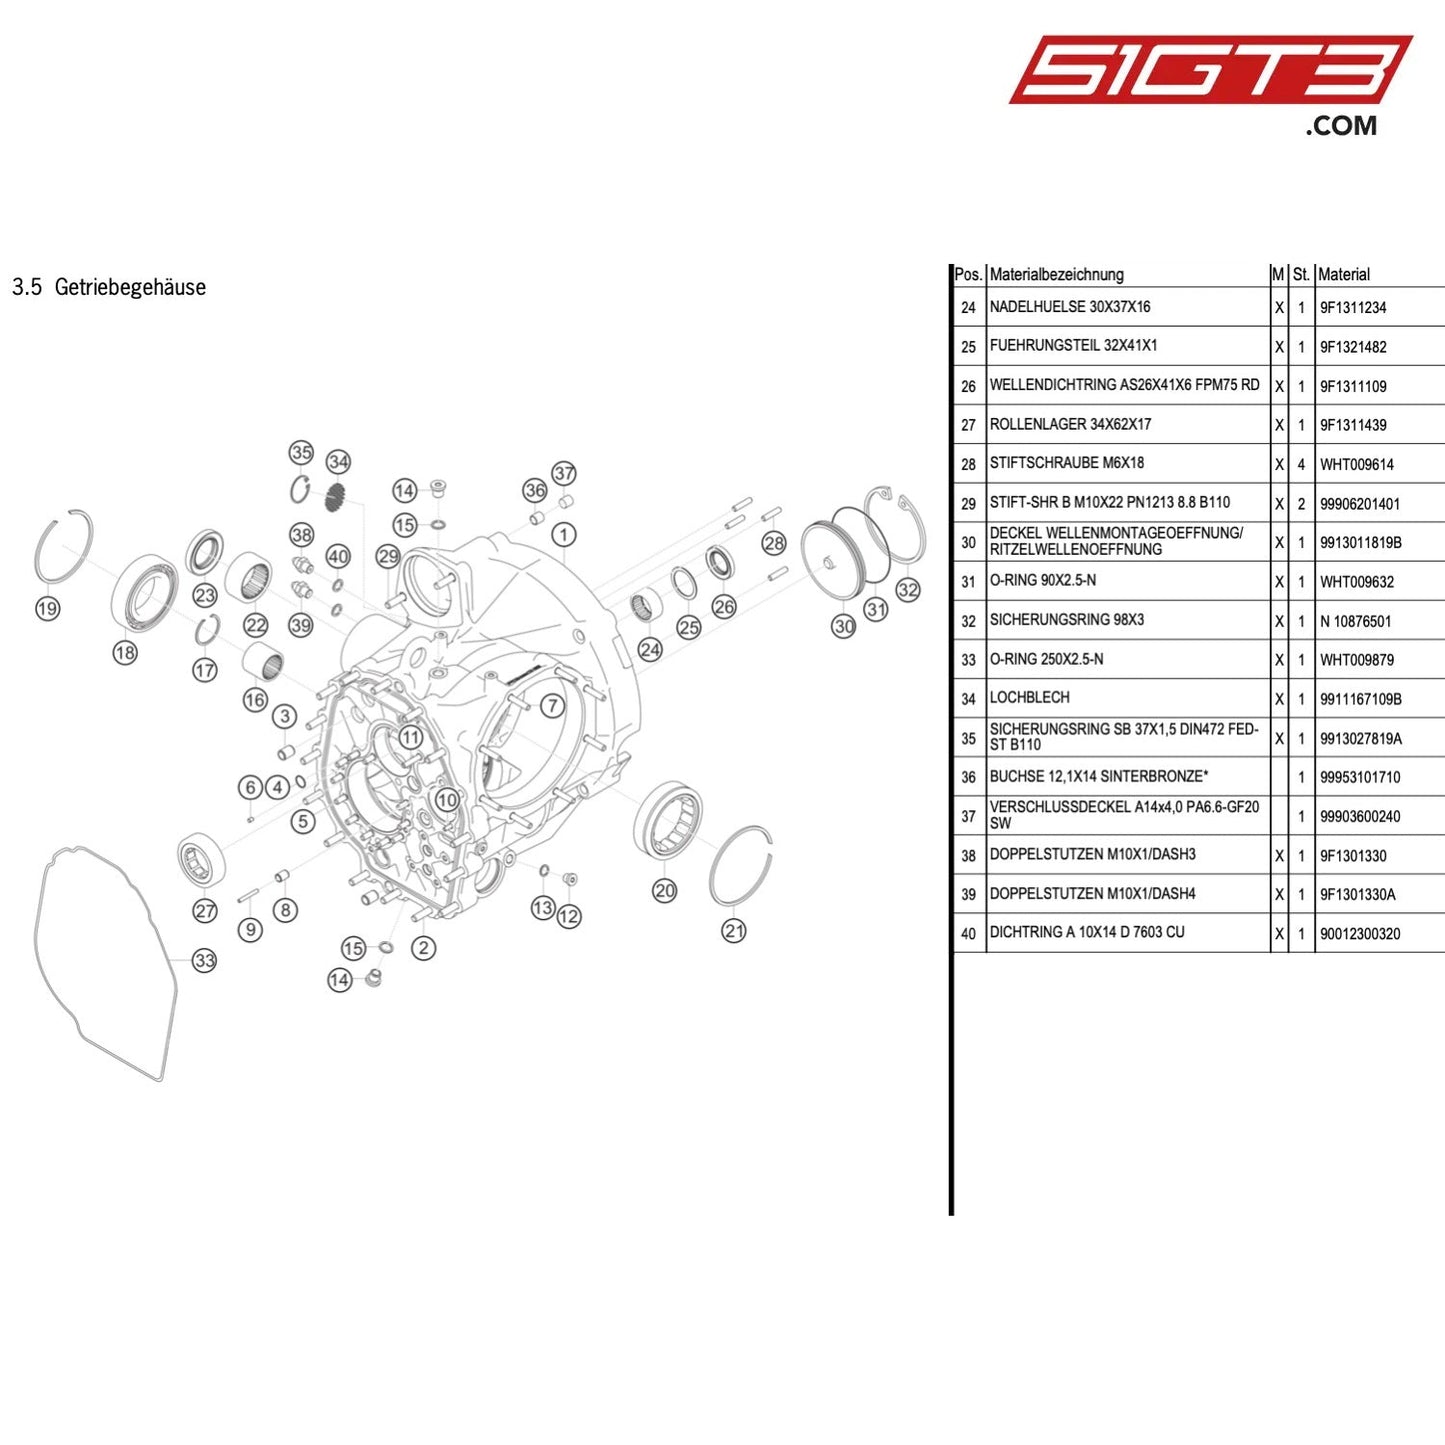 TRANSMISSION CASE - 9913015019B [PORSCHE 911 GT3 Cup Type 991 (GEN1) (2014)]